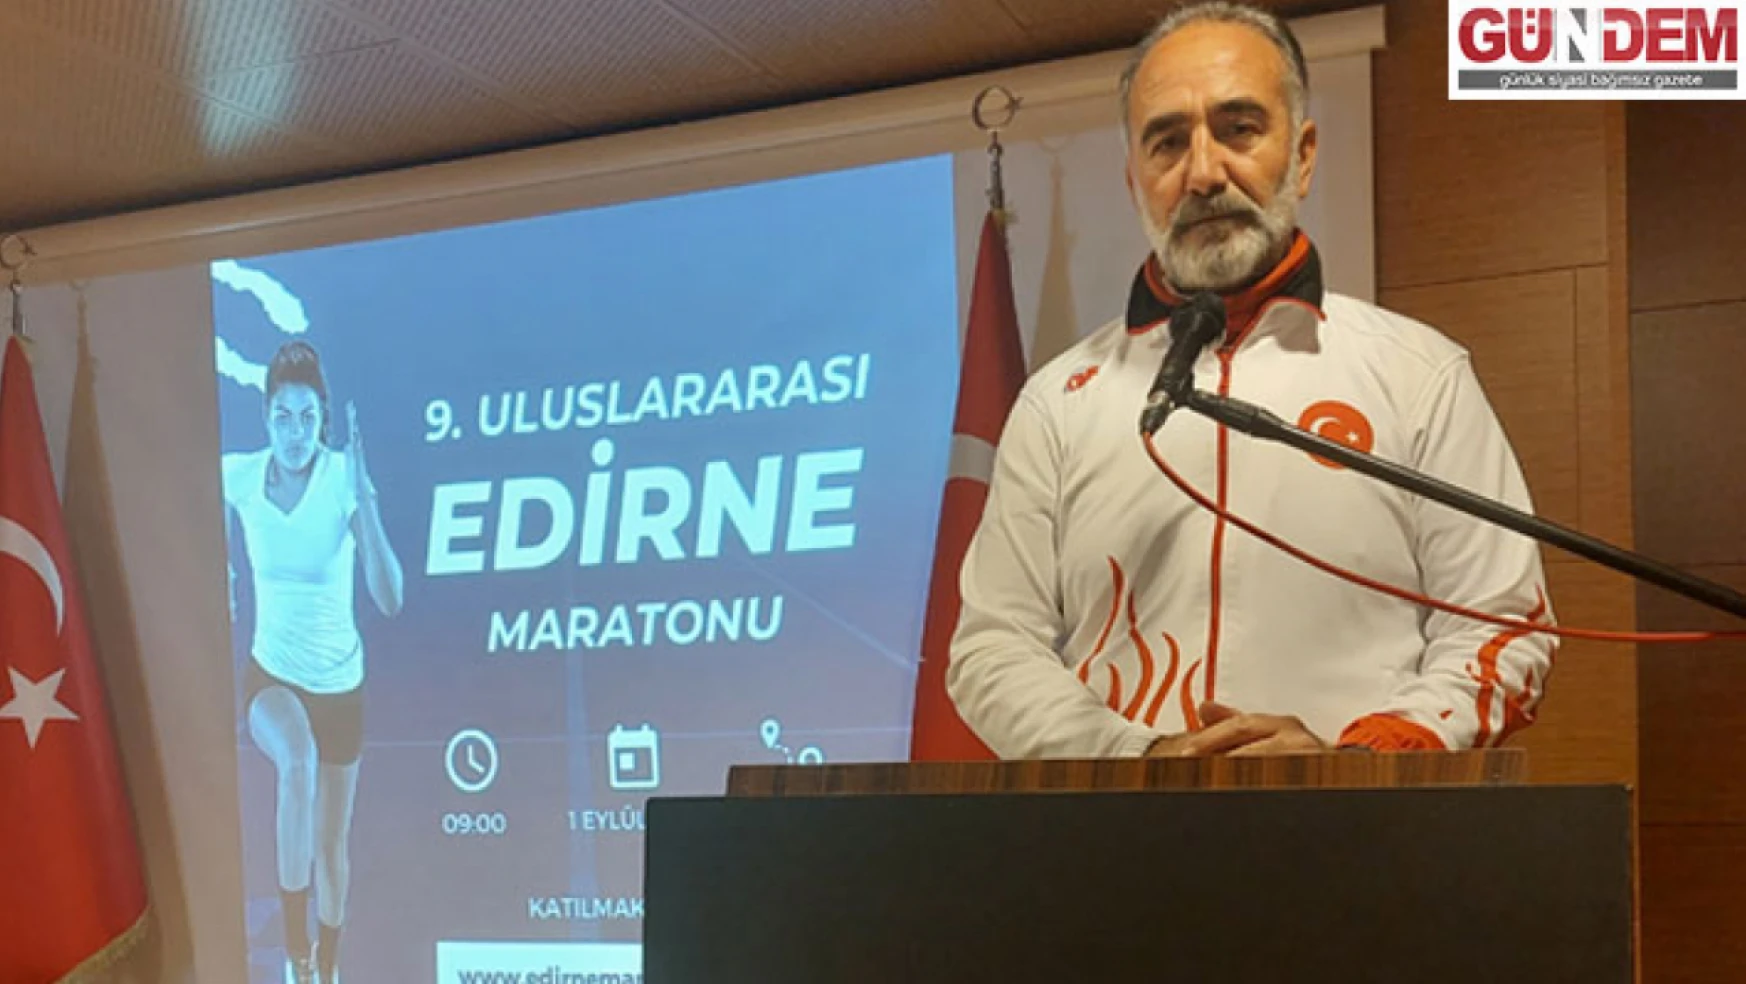 Uluslararası Edirne Maratonu ALES sınavı nedeniyle ertelendi